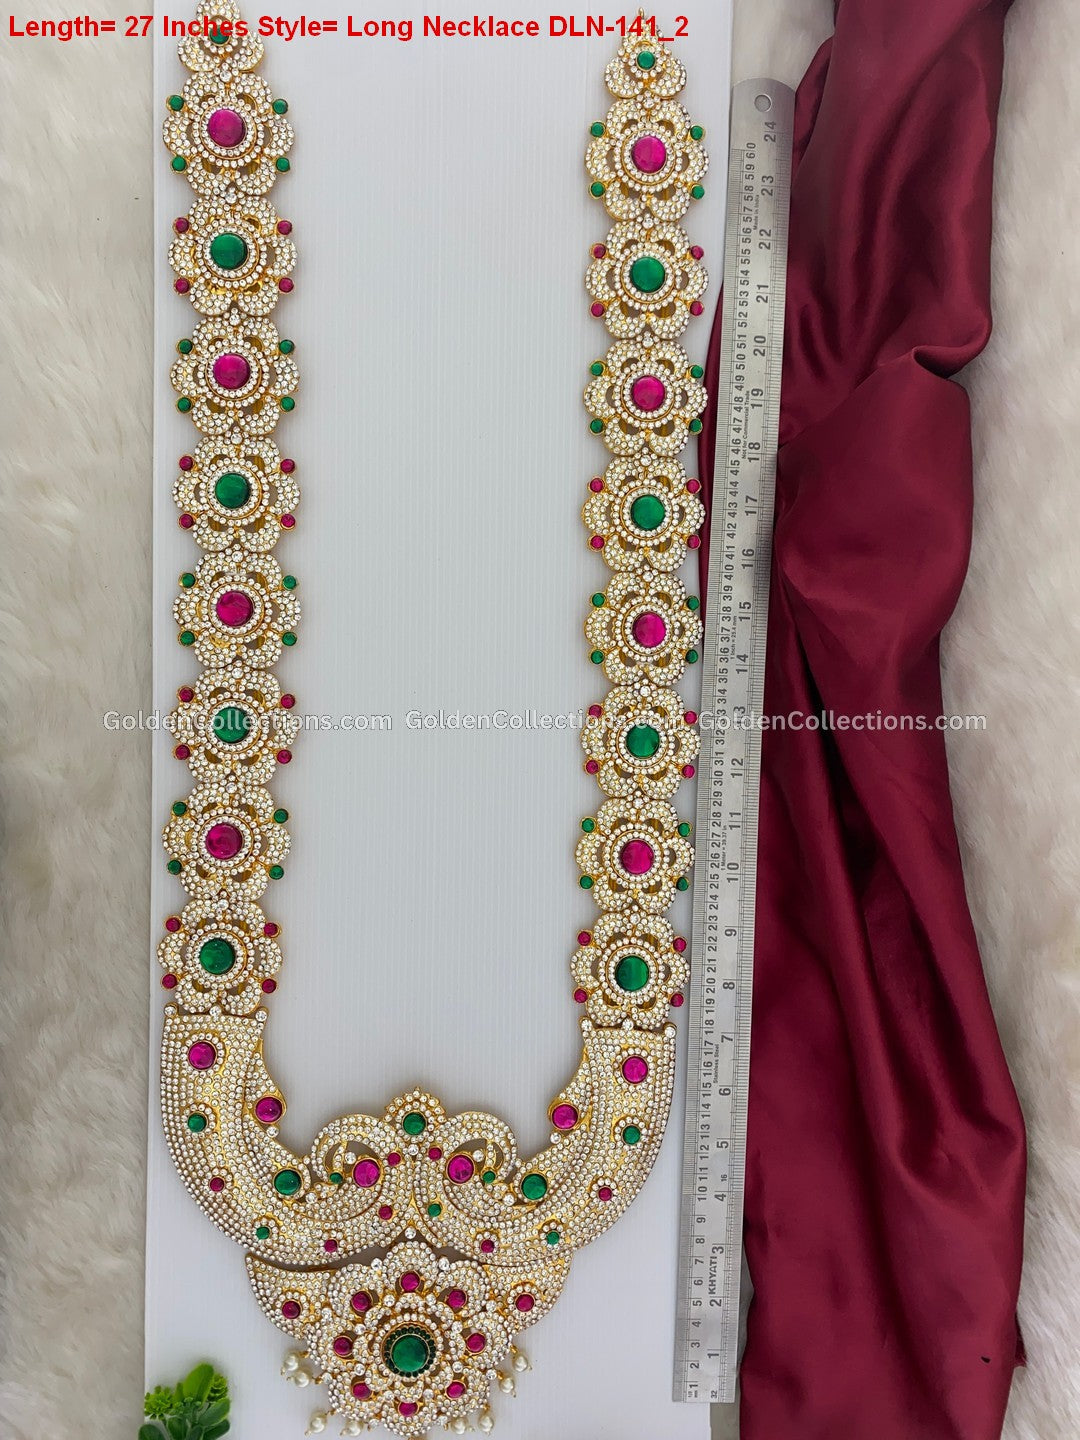 Hindu God Jewellery Ensemble - Stone Necklace DLN-141 2